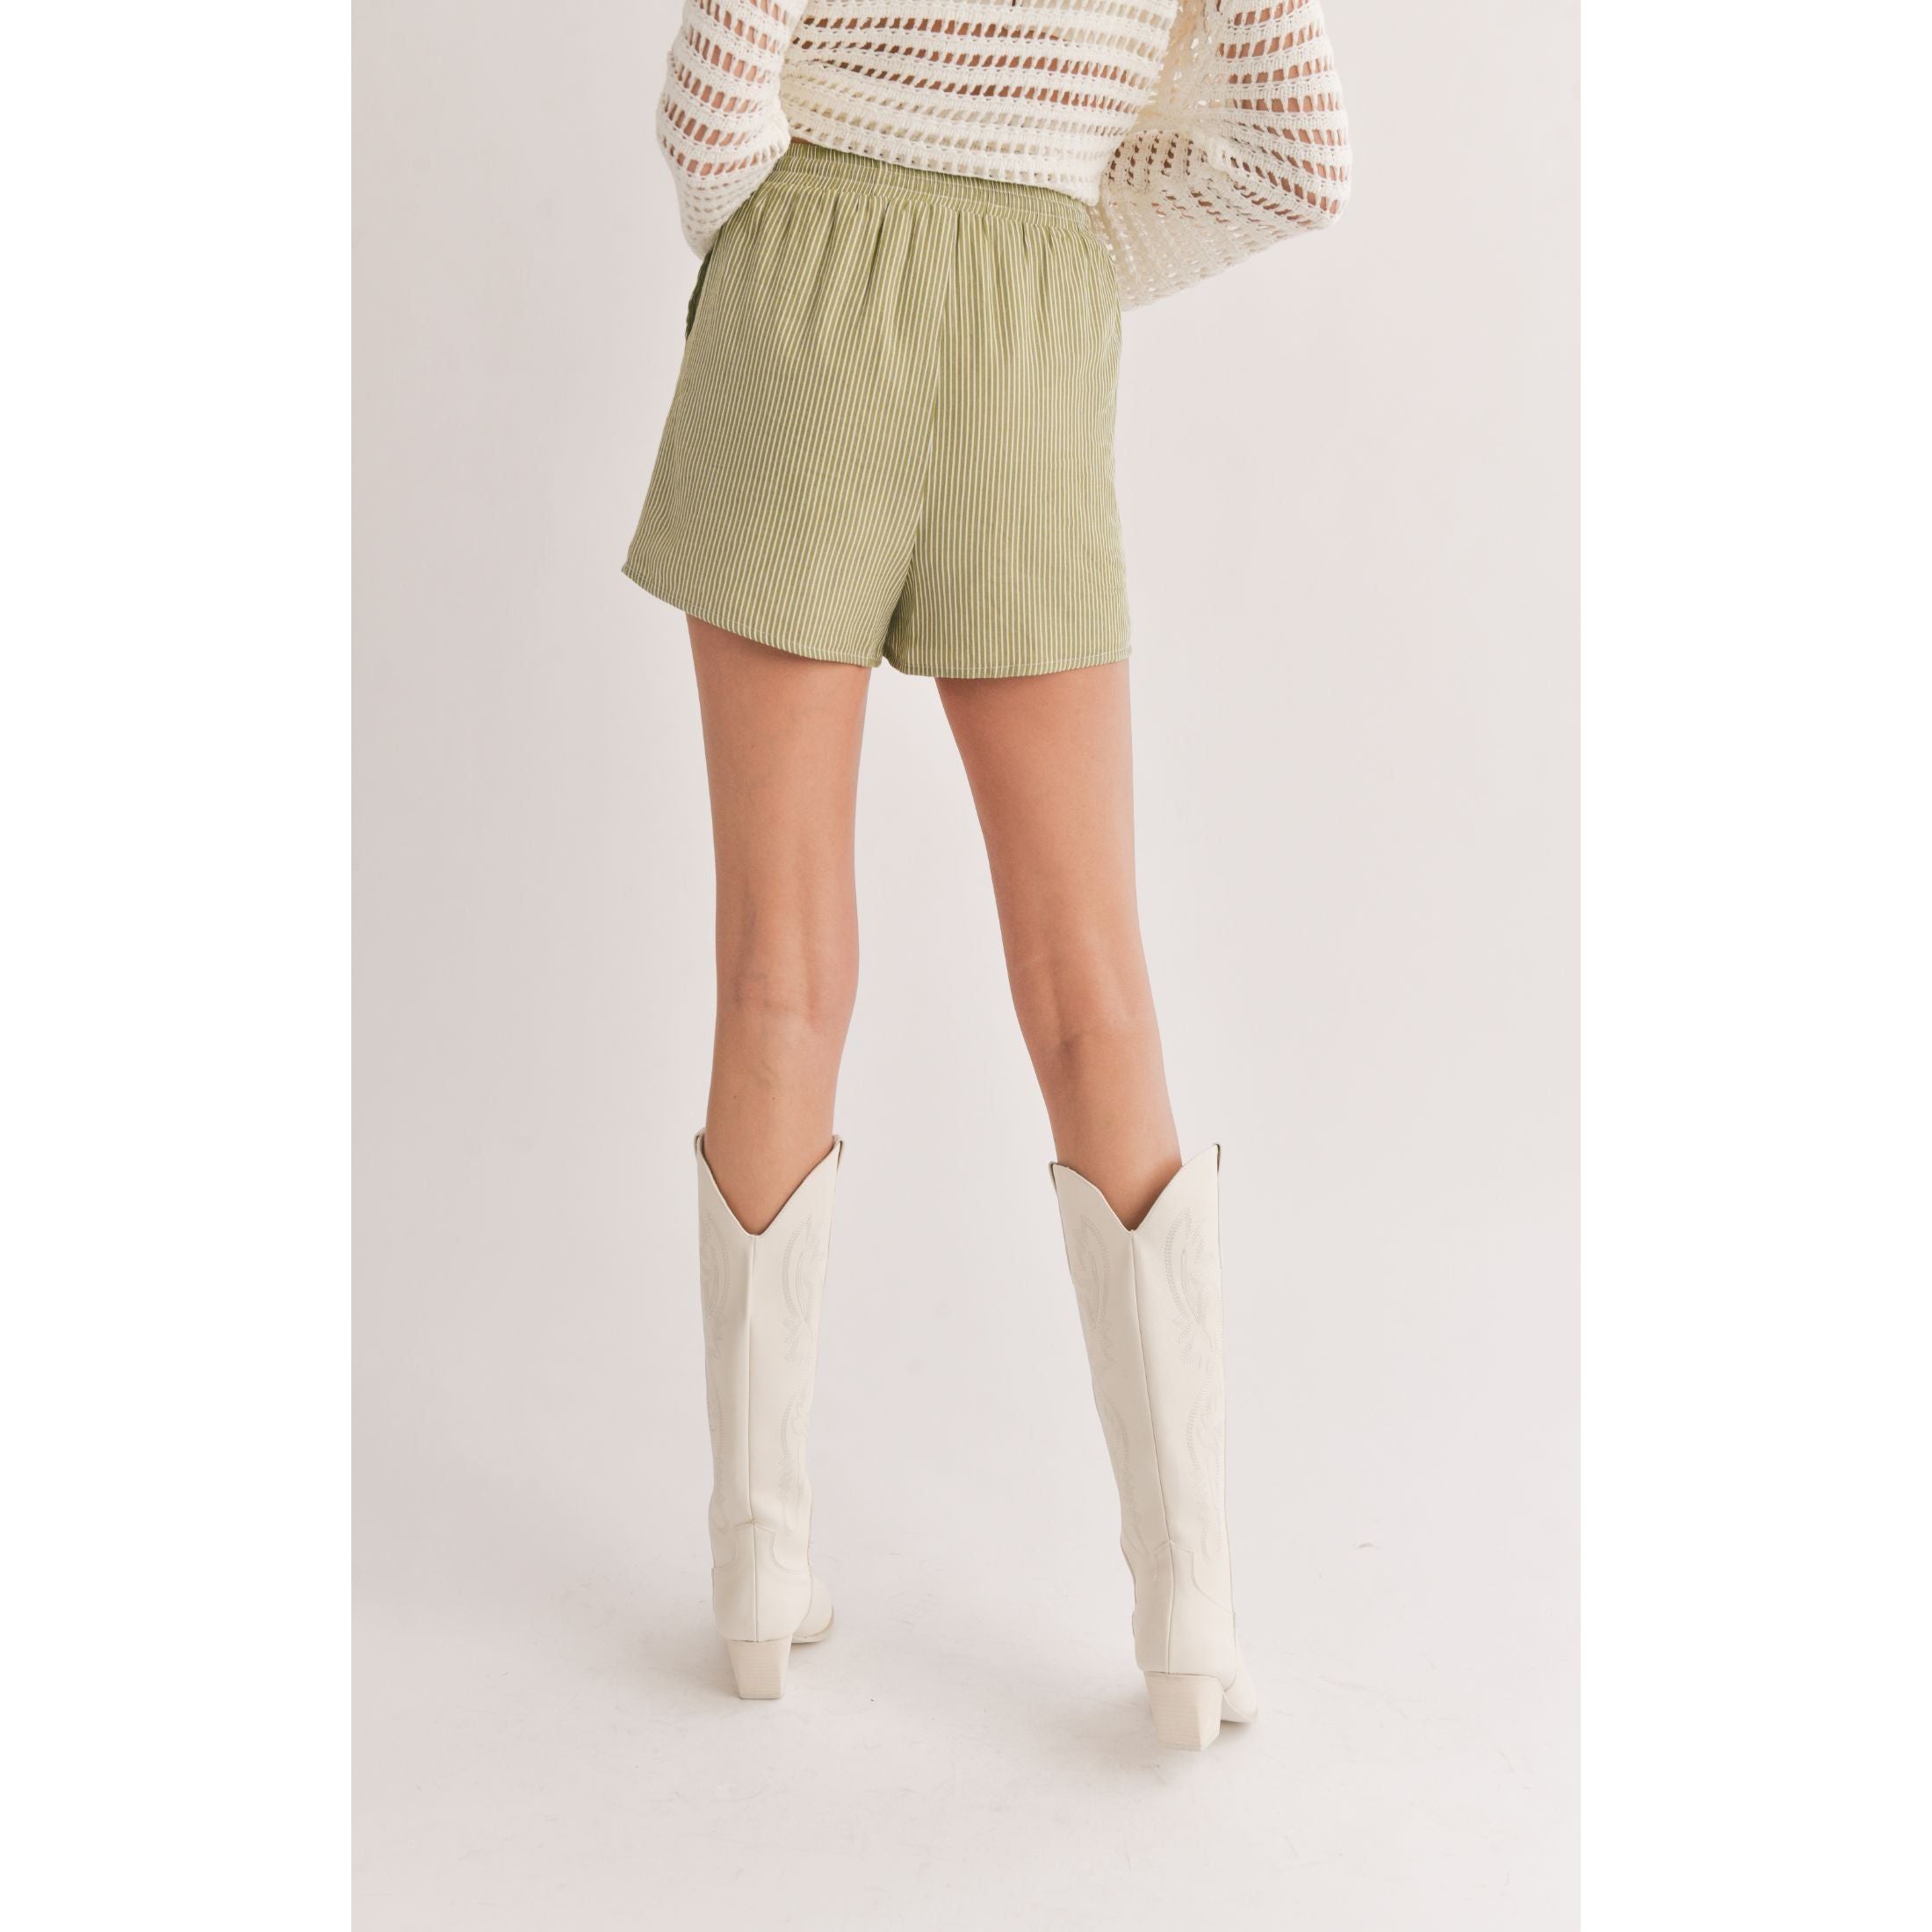 Sadie & Sage - Oasis Shorts in Green Stripe